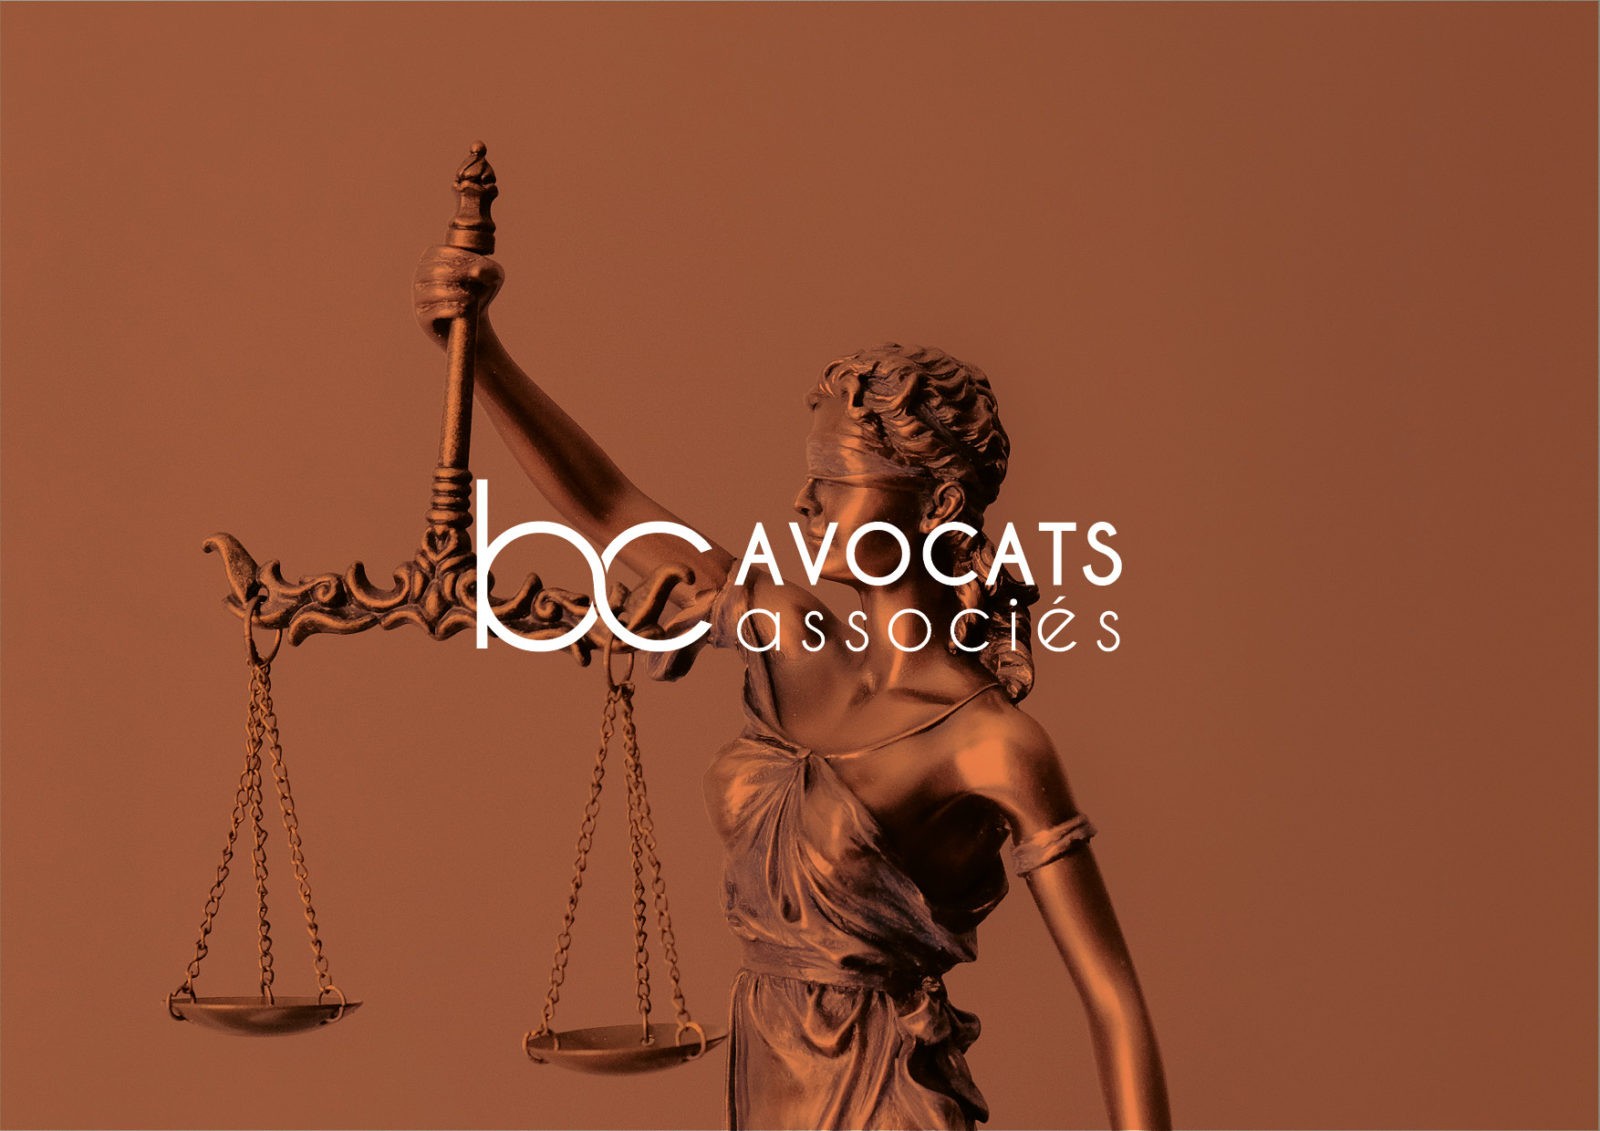 Création de logo pour le cabinet d’avocats | B&C | Lyon